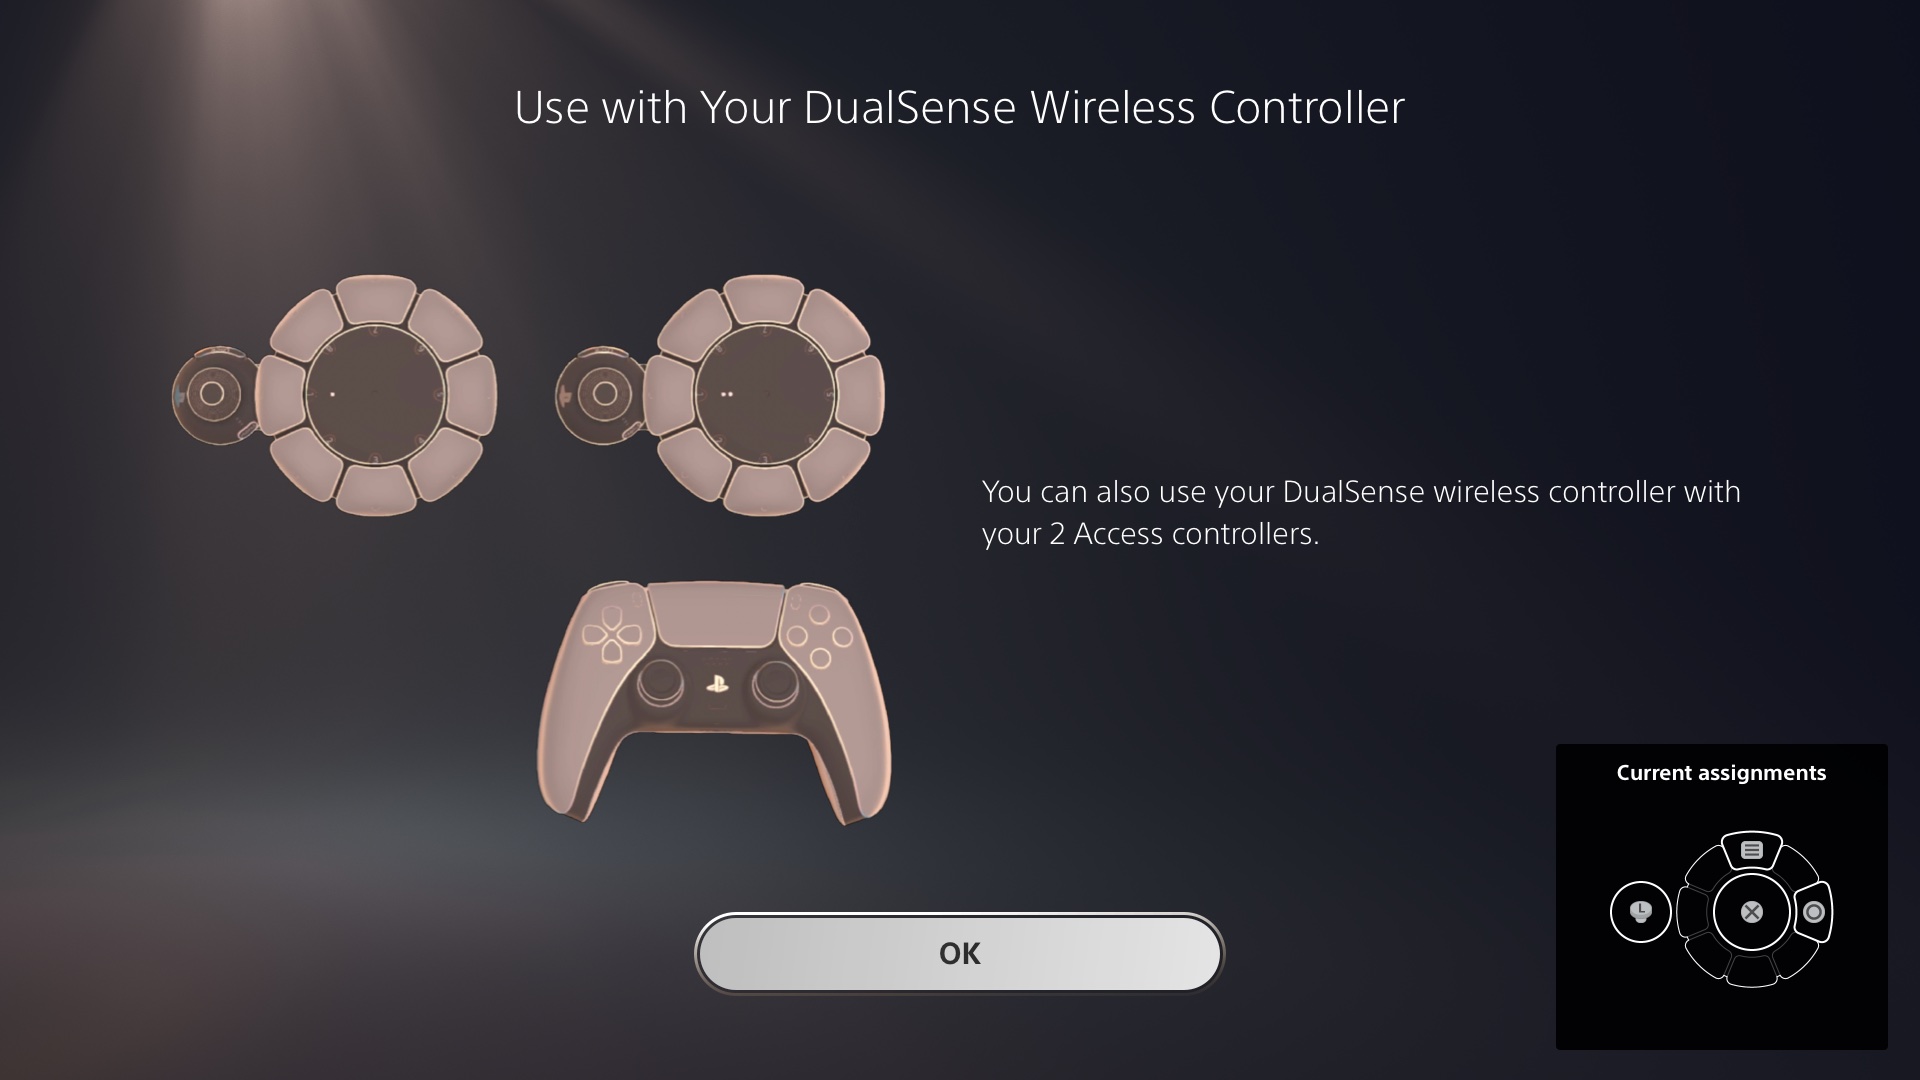  "Image de l'interface utilisateur du contrôleur d'accès montrant la possibilité de jumeler jusqu'à deux contrôleurs d'accès avec un contrôleur DualSense"